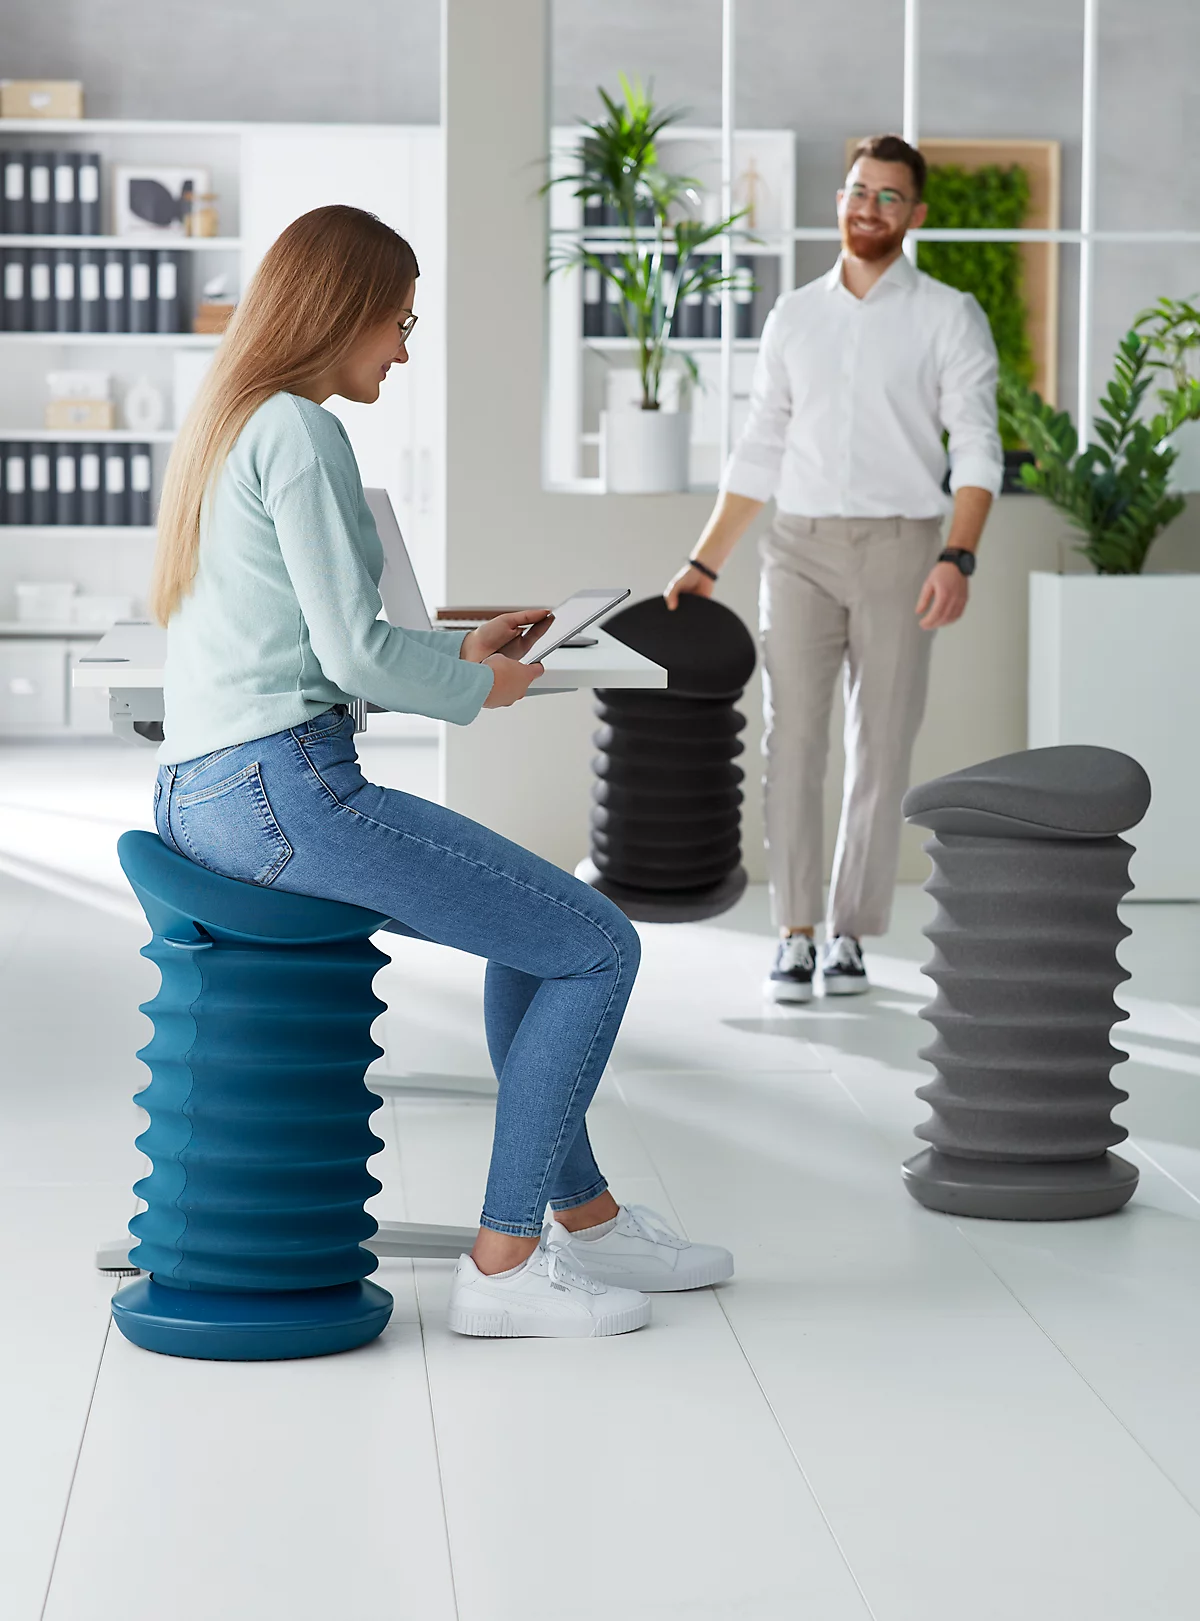 Kruk Topstar® Sitness 4D, voor bewegend & ergonomisch zitten, veermechanisme, zithoogte verstelbaar, B 375 x D 360 x H 530-640 mm, stoffen bekleding in diverse kleuren